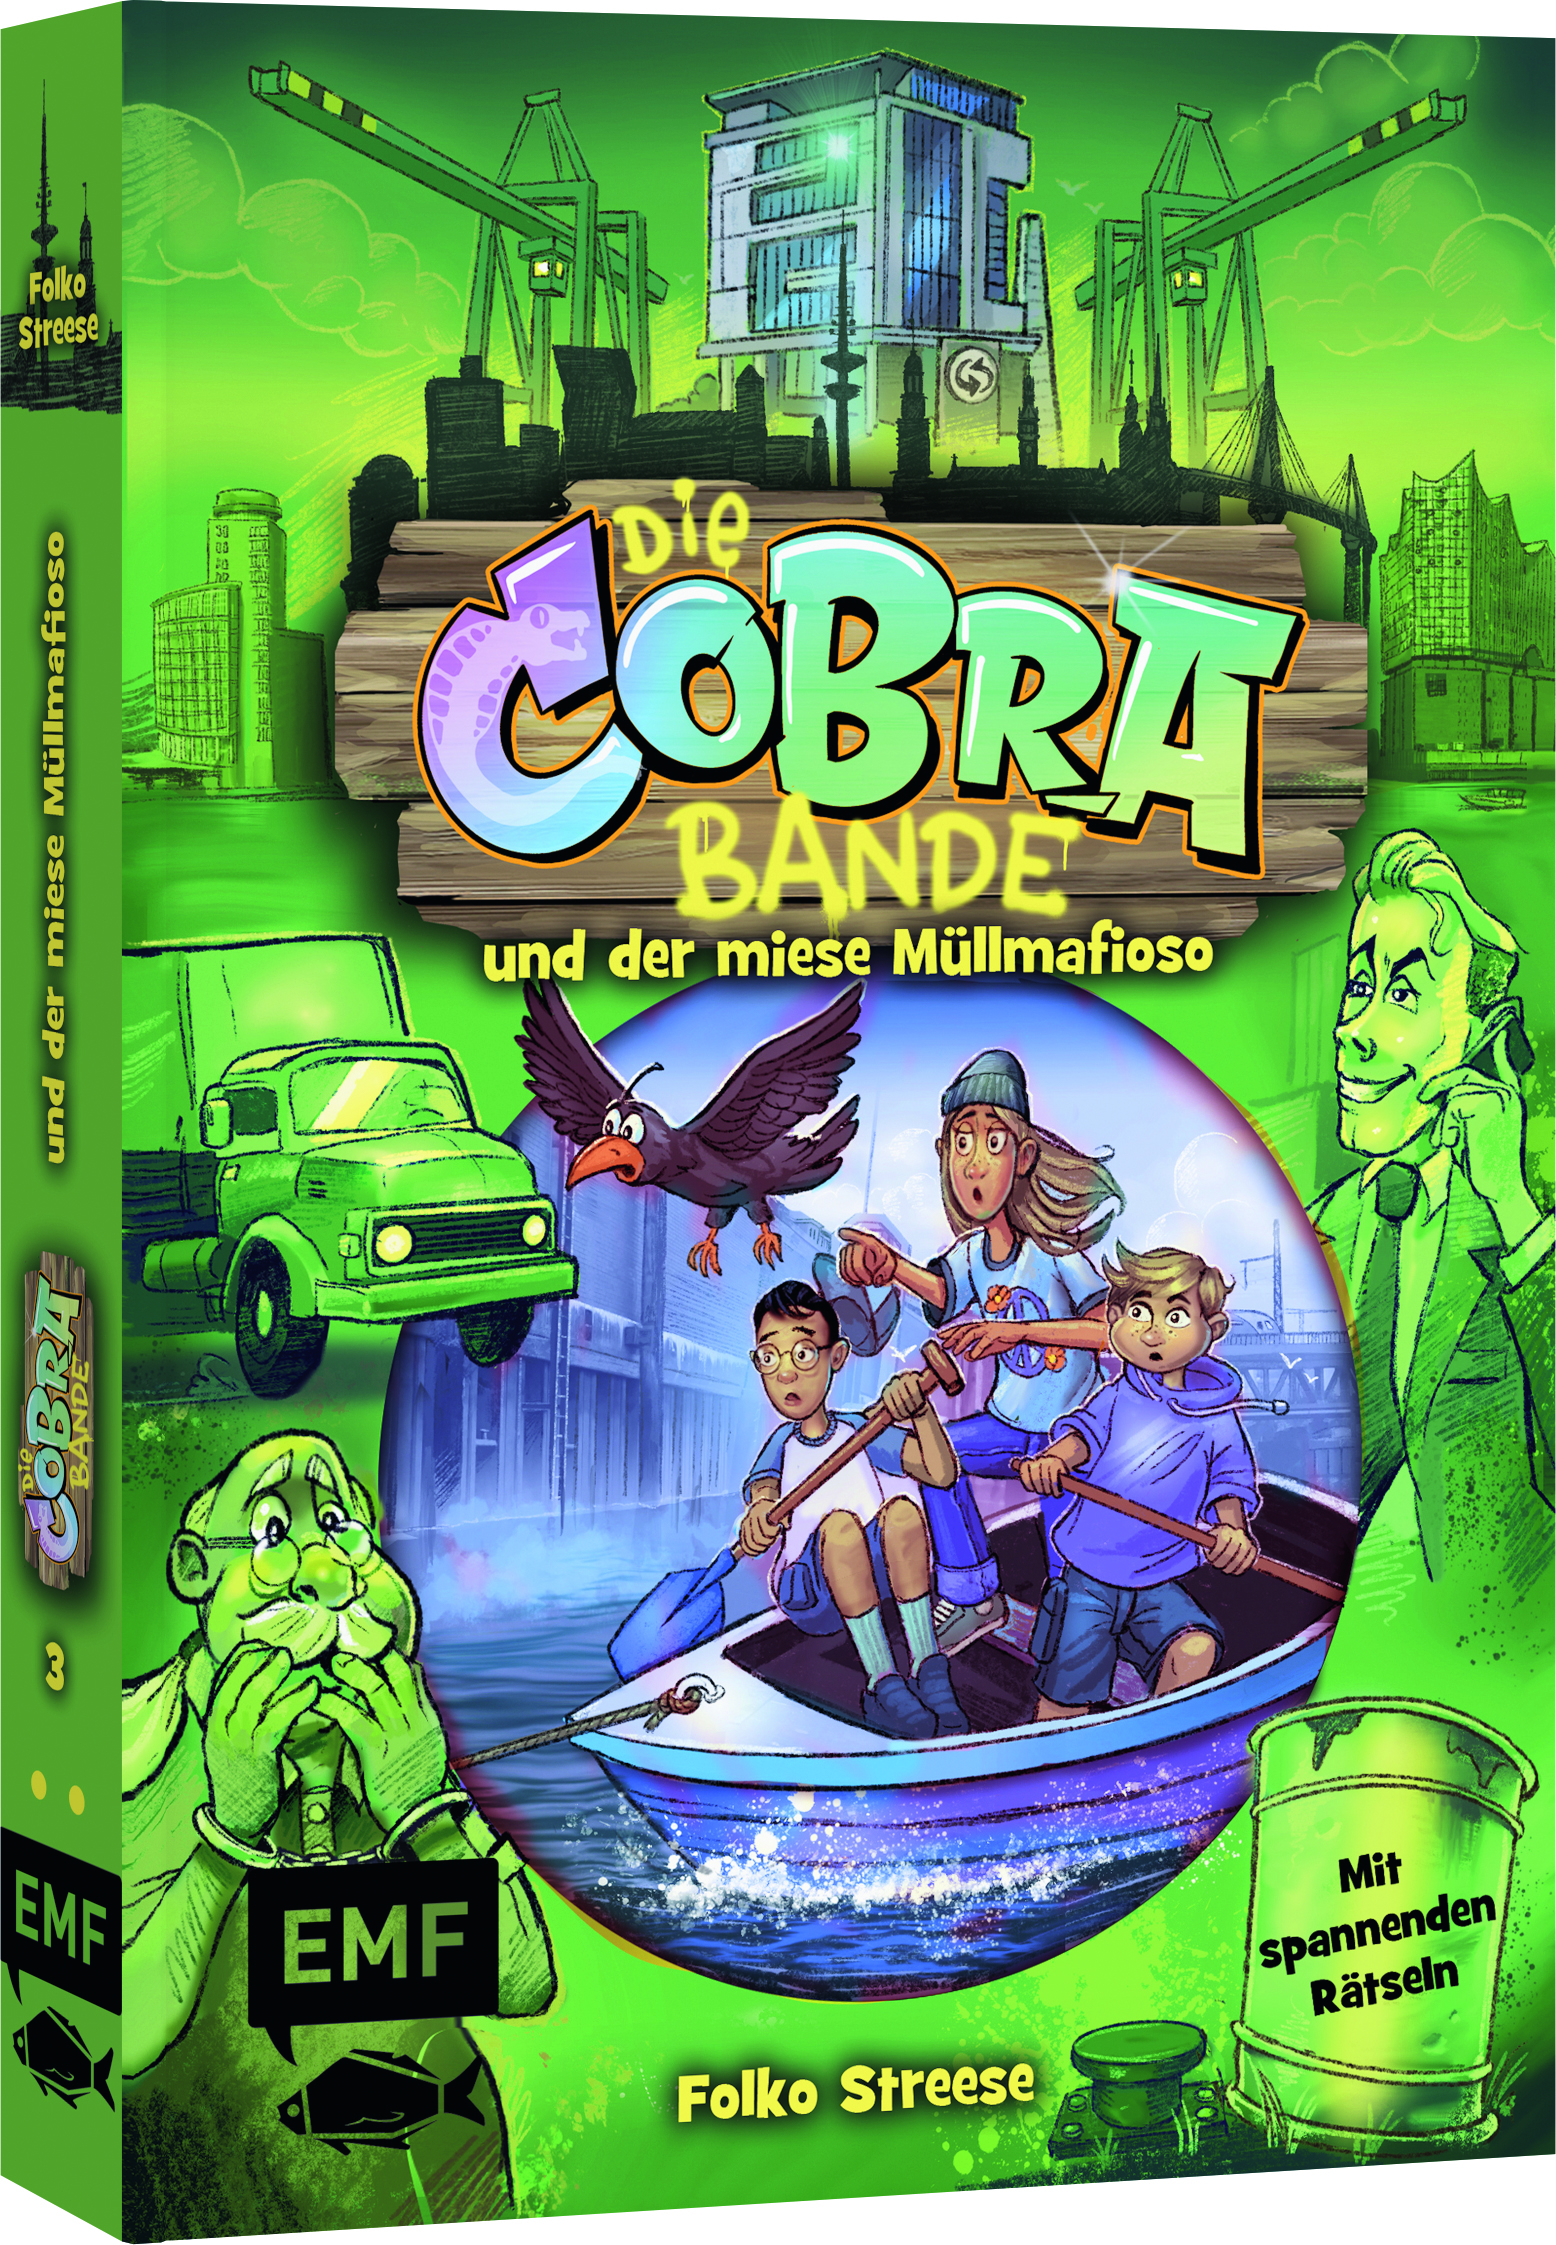 Die Cobra Bande und der miese Müllmafioso – Band 3